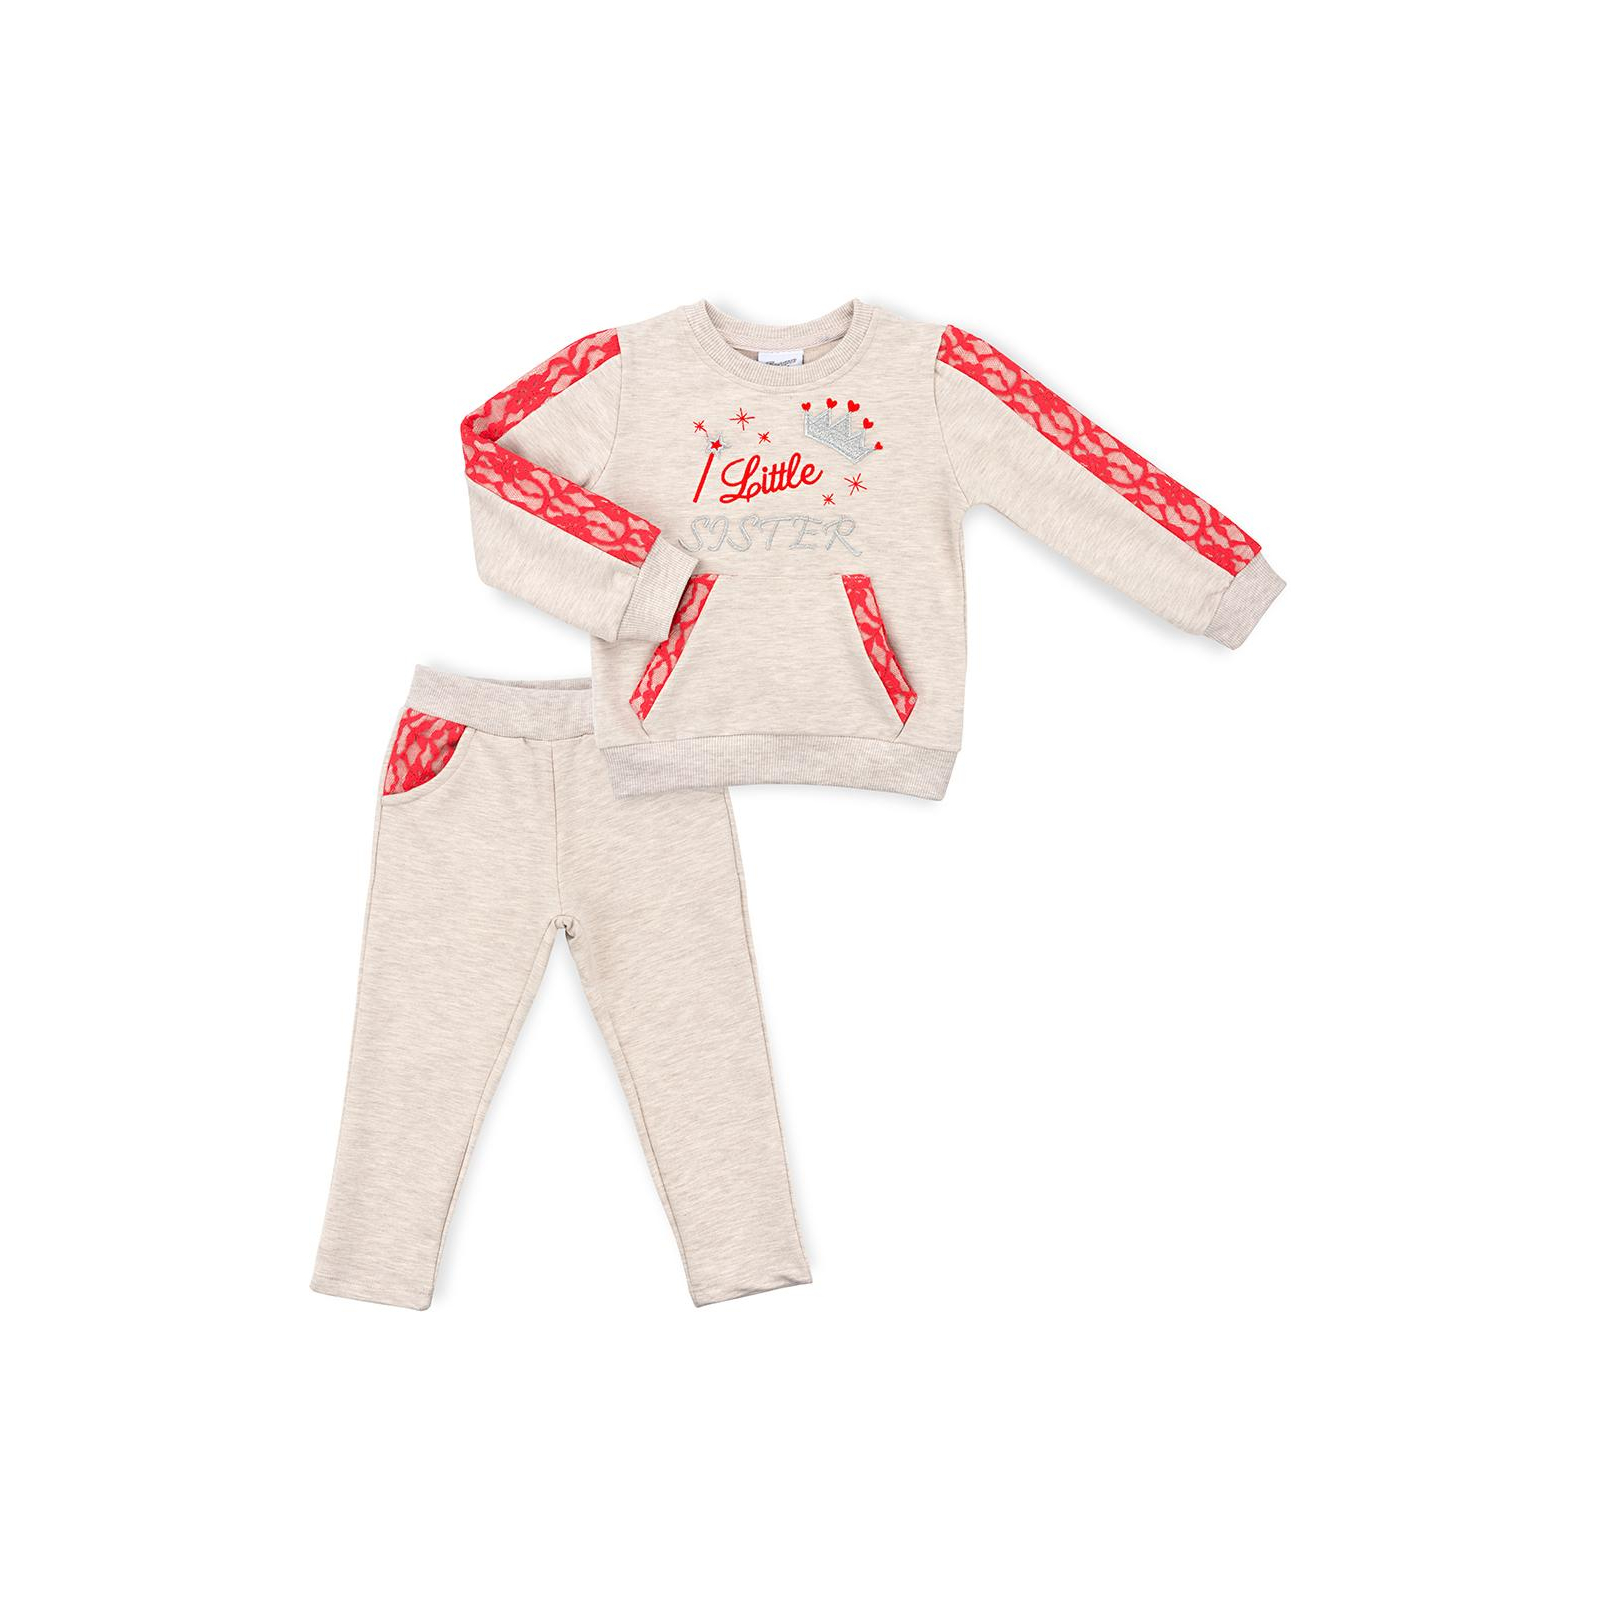 Набір дитячого одягу Breeze з мереживними вставками (10072-98B-beige)